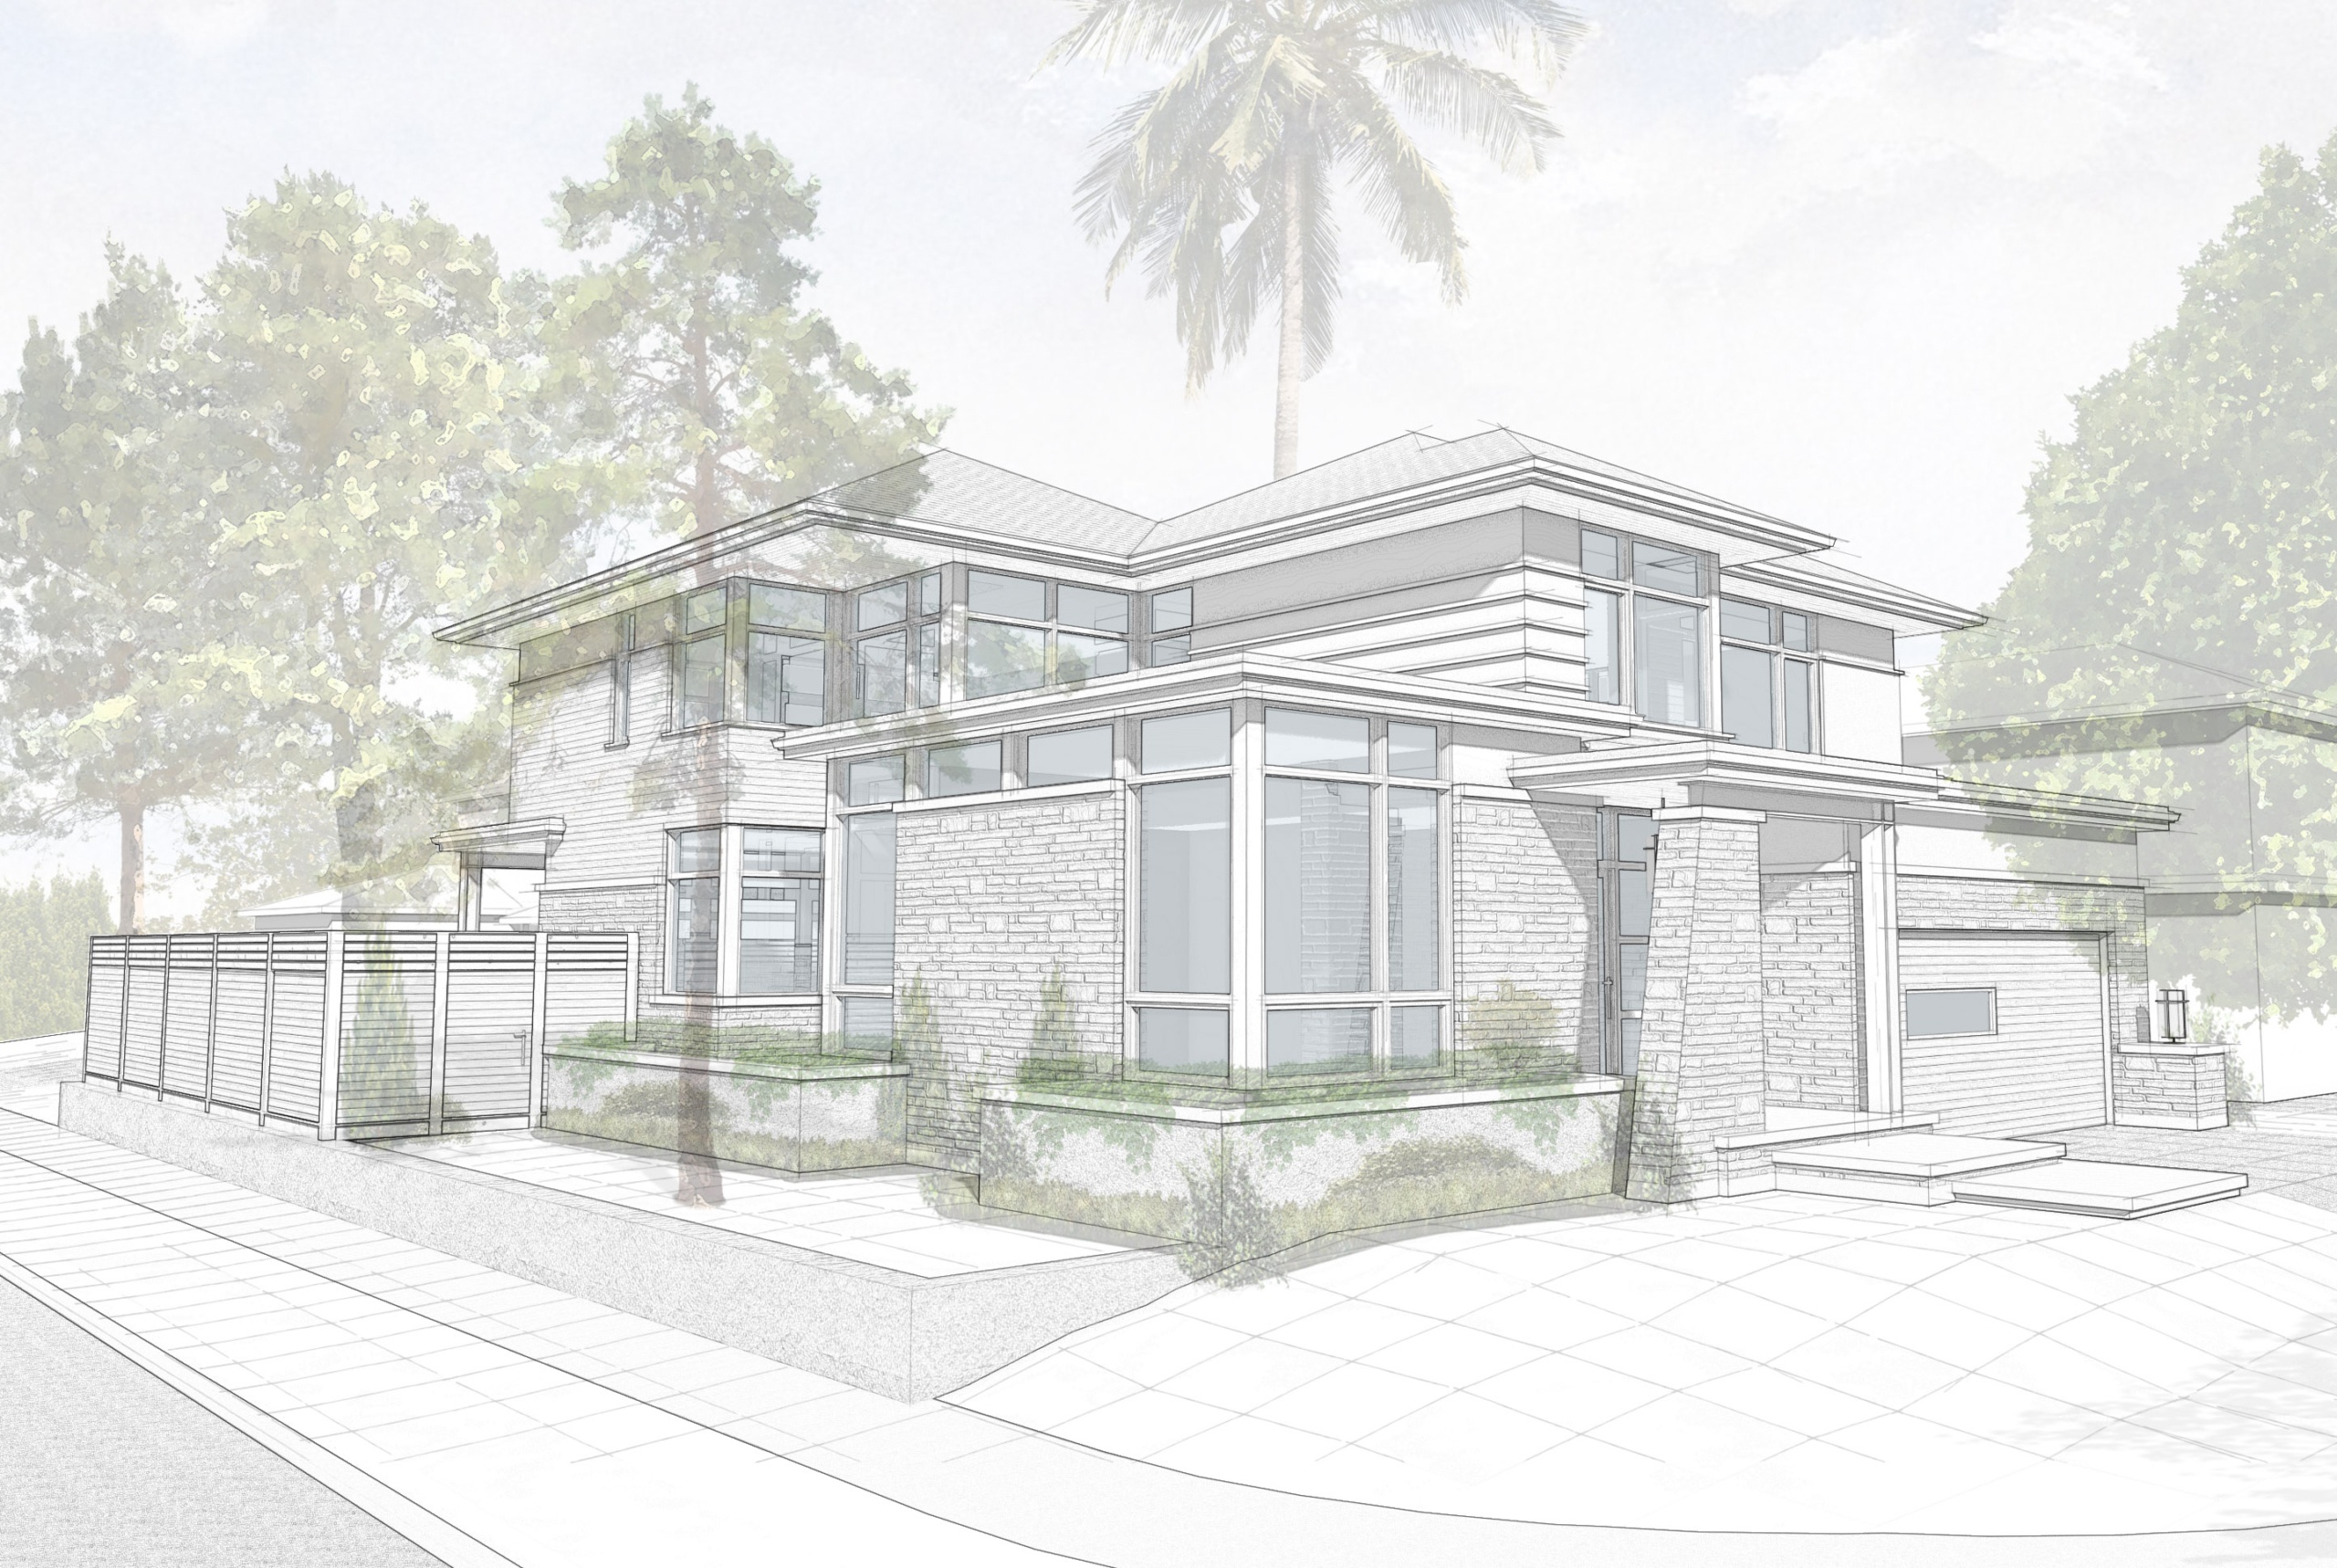 San Jose, California home design by David Small Designs